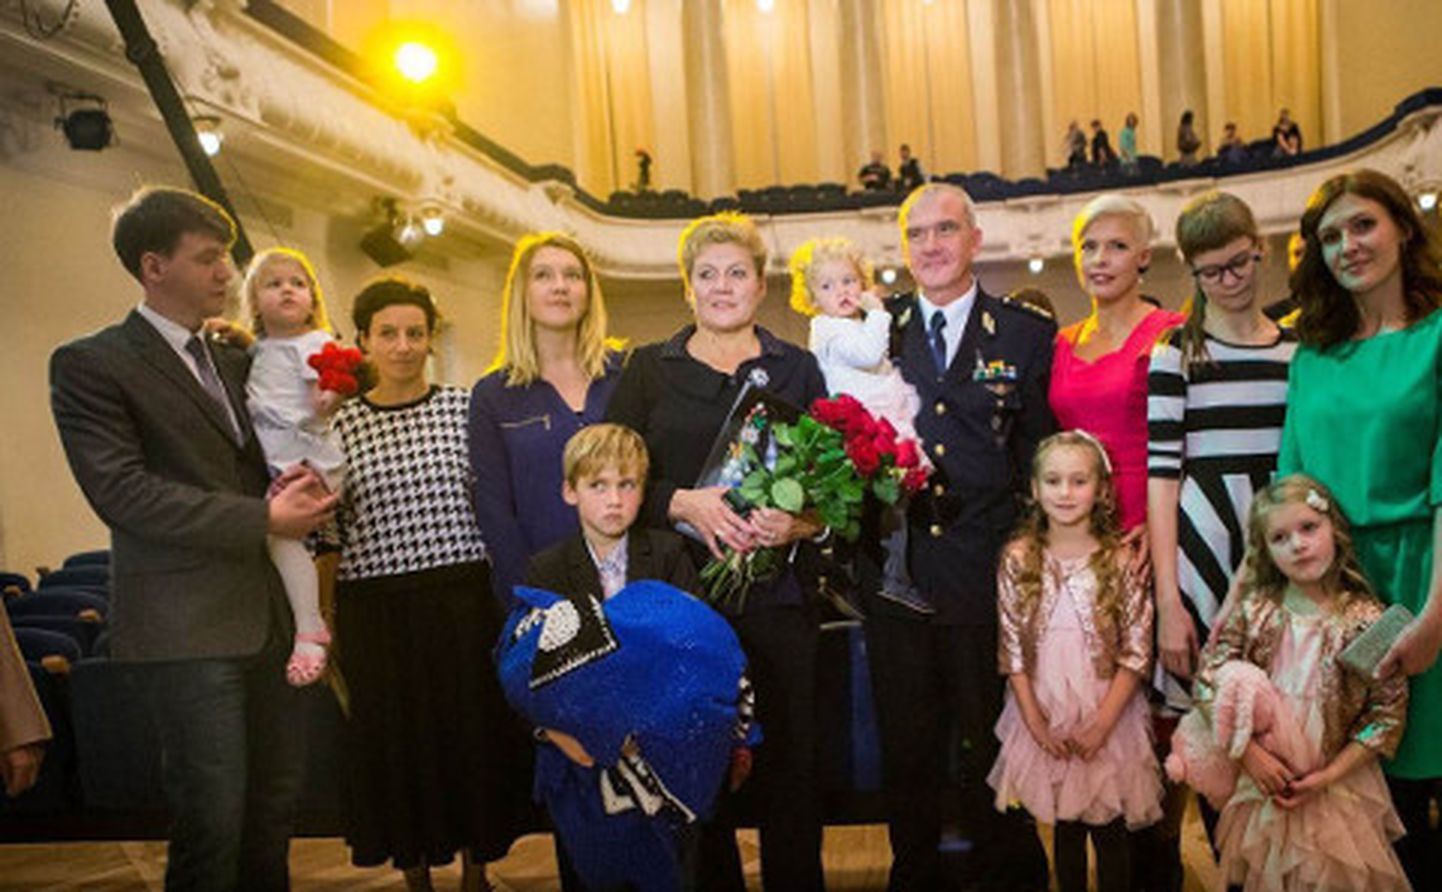 9. novembril Estonia kontserdisaalis aasta isa väljakuulutamise pidulikul tseremoonial (vasakult paremale): poeg Andrei koos oma tütre Asjaga, poja abikaasa Katja, vanem tütar Anna koos oma poja Emrega, abikaasa Marina, Valeri Kutuzov koos tütretütar Mayaga, vanema tütre vanem tütar Mira, proua Evelin Ilves, vanim lapselaps, pojatütar Kristina ning noorem tütar Natalja koos oma tütre Evaga.